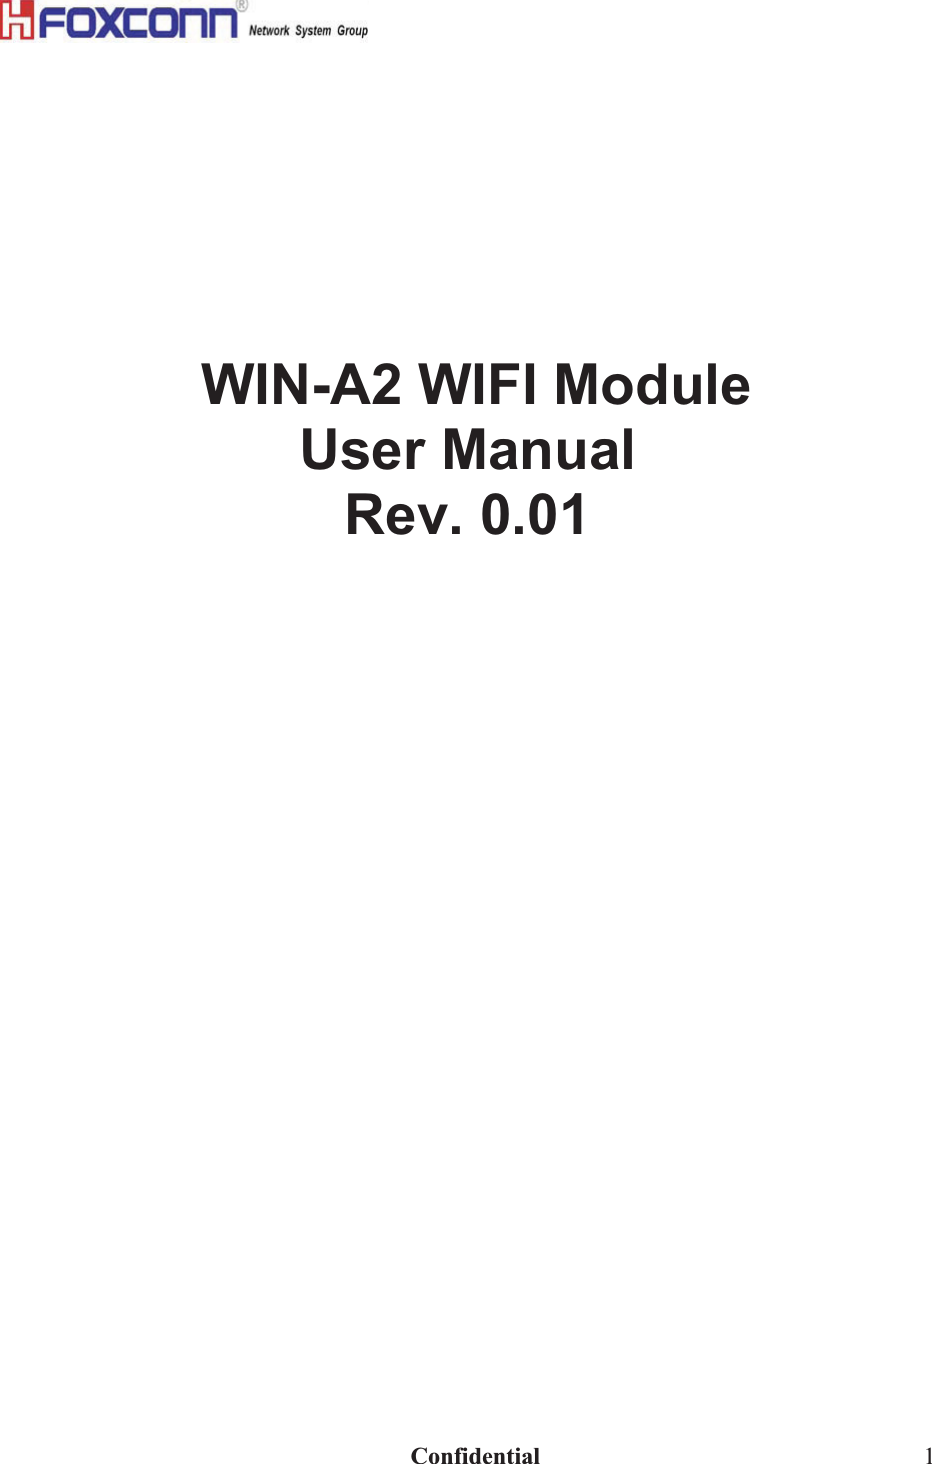                                                                              Confidential  1                                           ʳʳʳʳʳʳʳʳʳʳʳʳʳʳWIN-A2 WIFI ModuleUser ManualRev. 0.01 